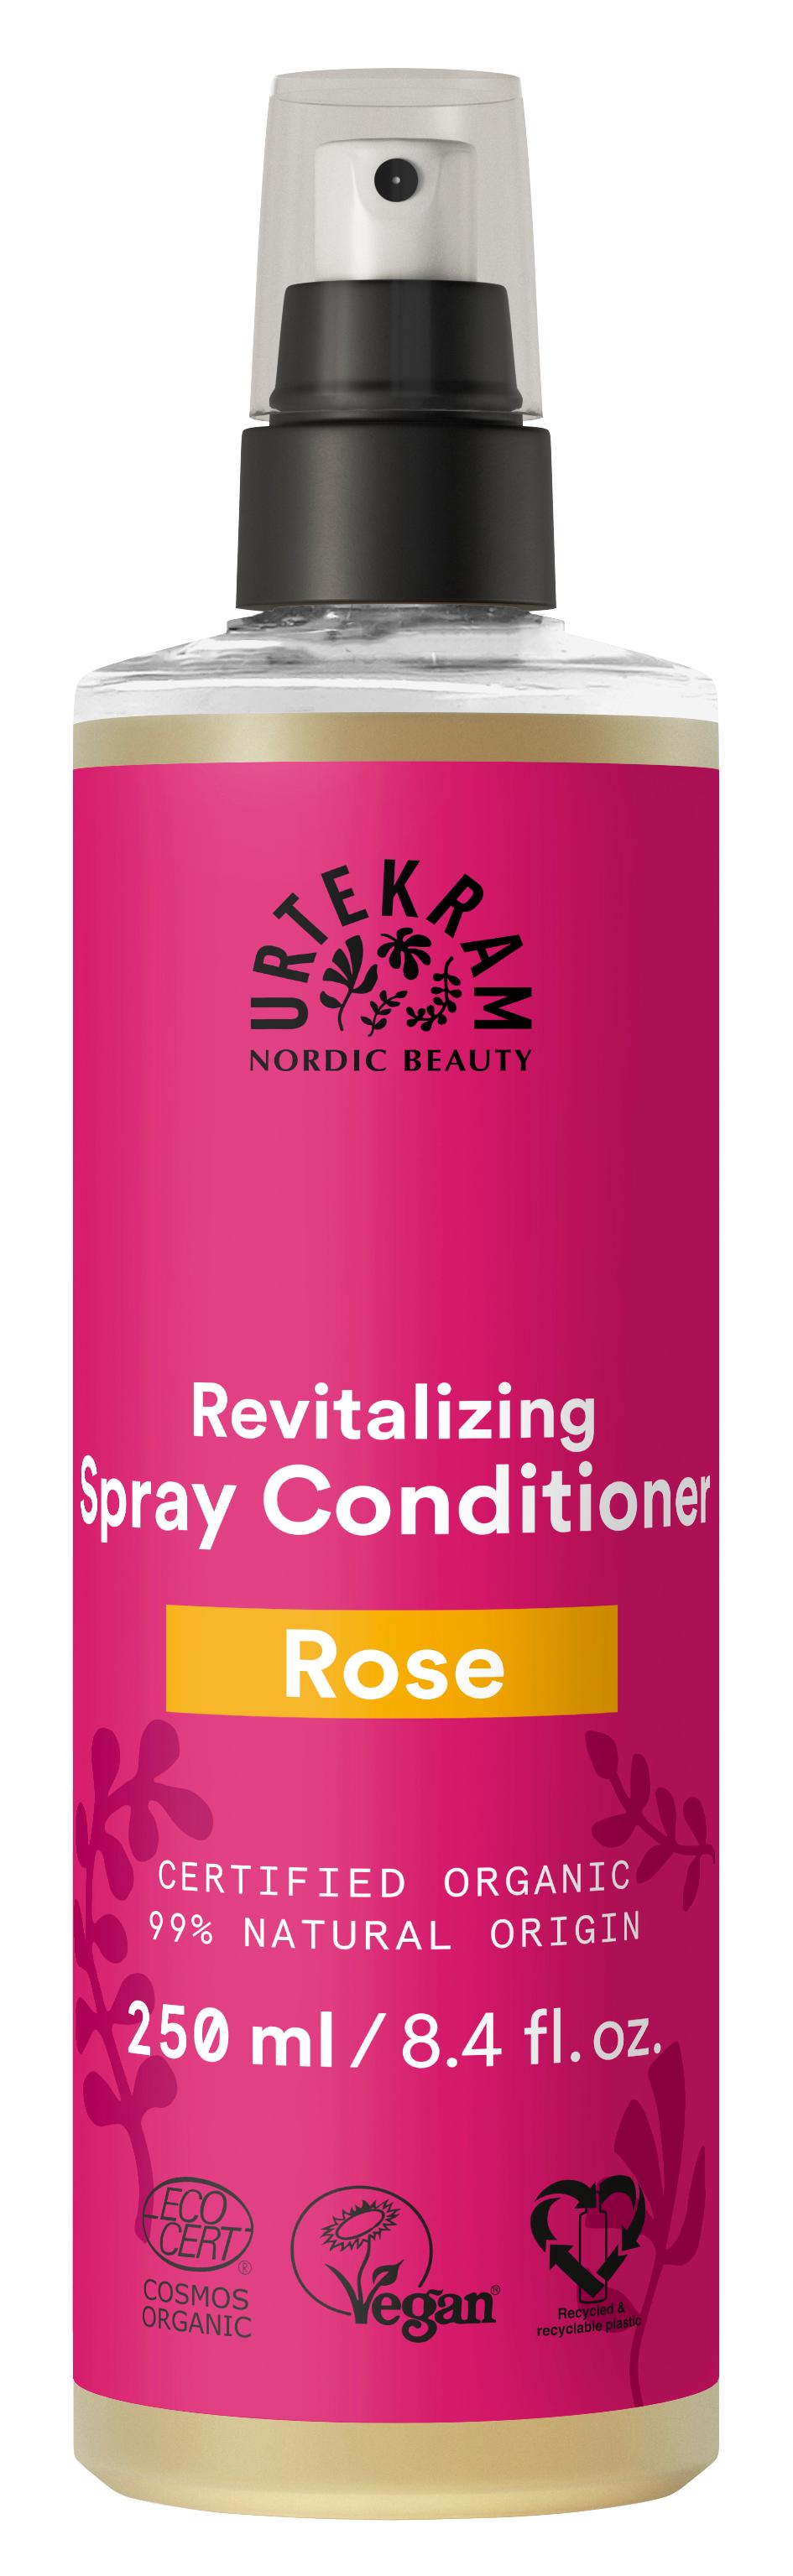 Urtekram Rose Sprayconditioner | 250 ml